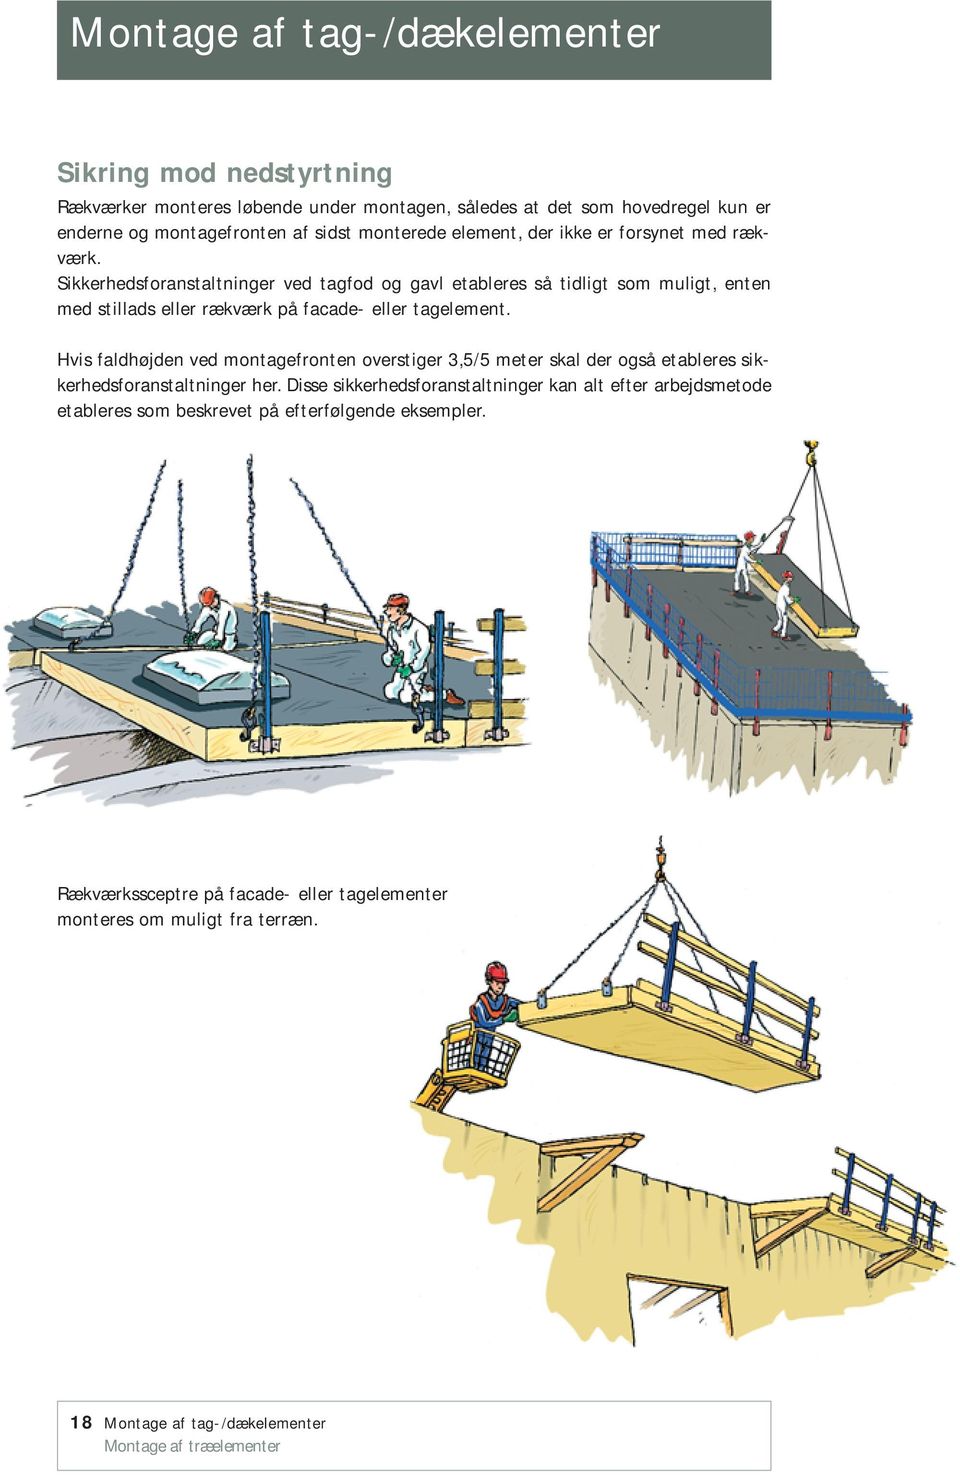 Sikkerhedsforanstaltninger ved tagfod og gavl etableres så tidligt som muligt, enten med stillads eller rækværk på facade- eller tagelement.